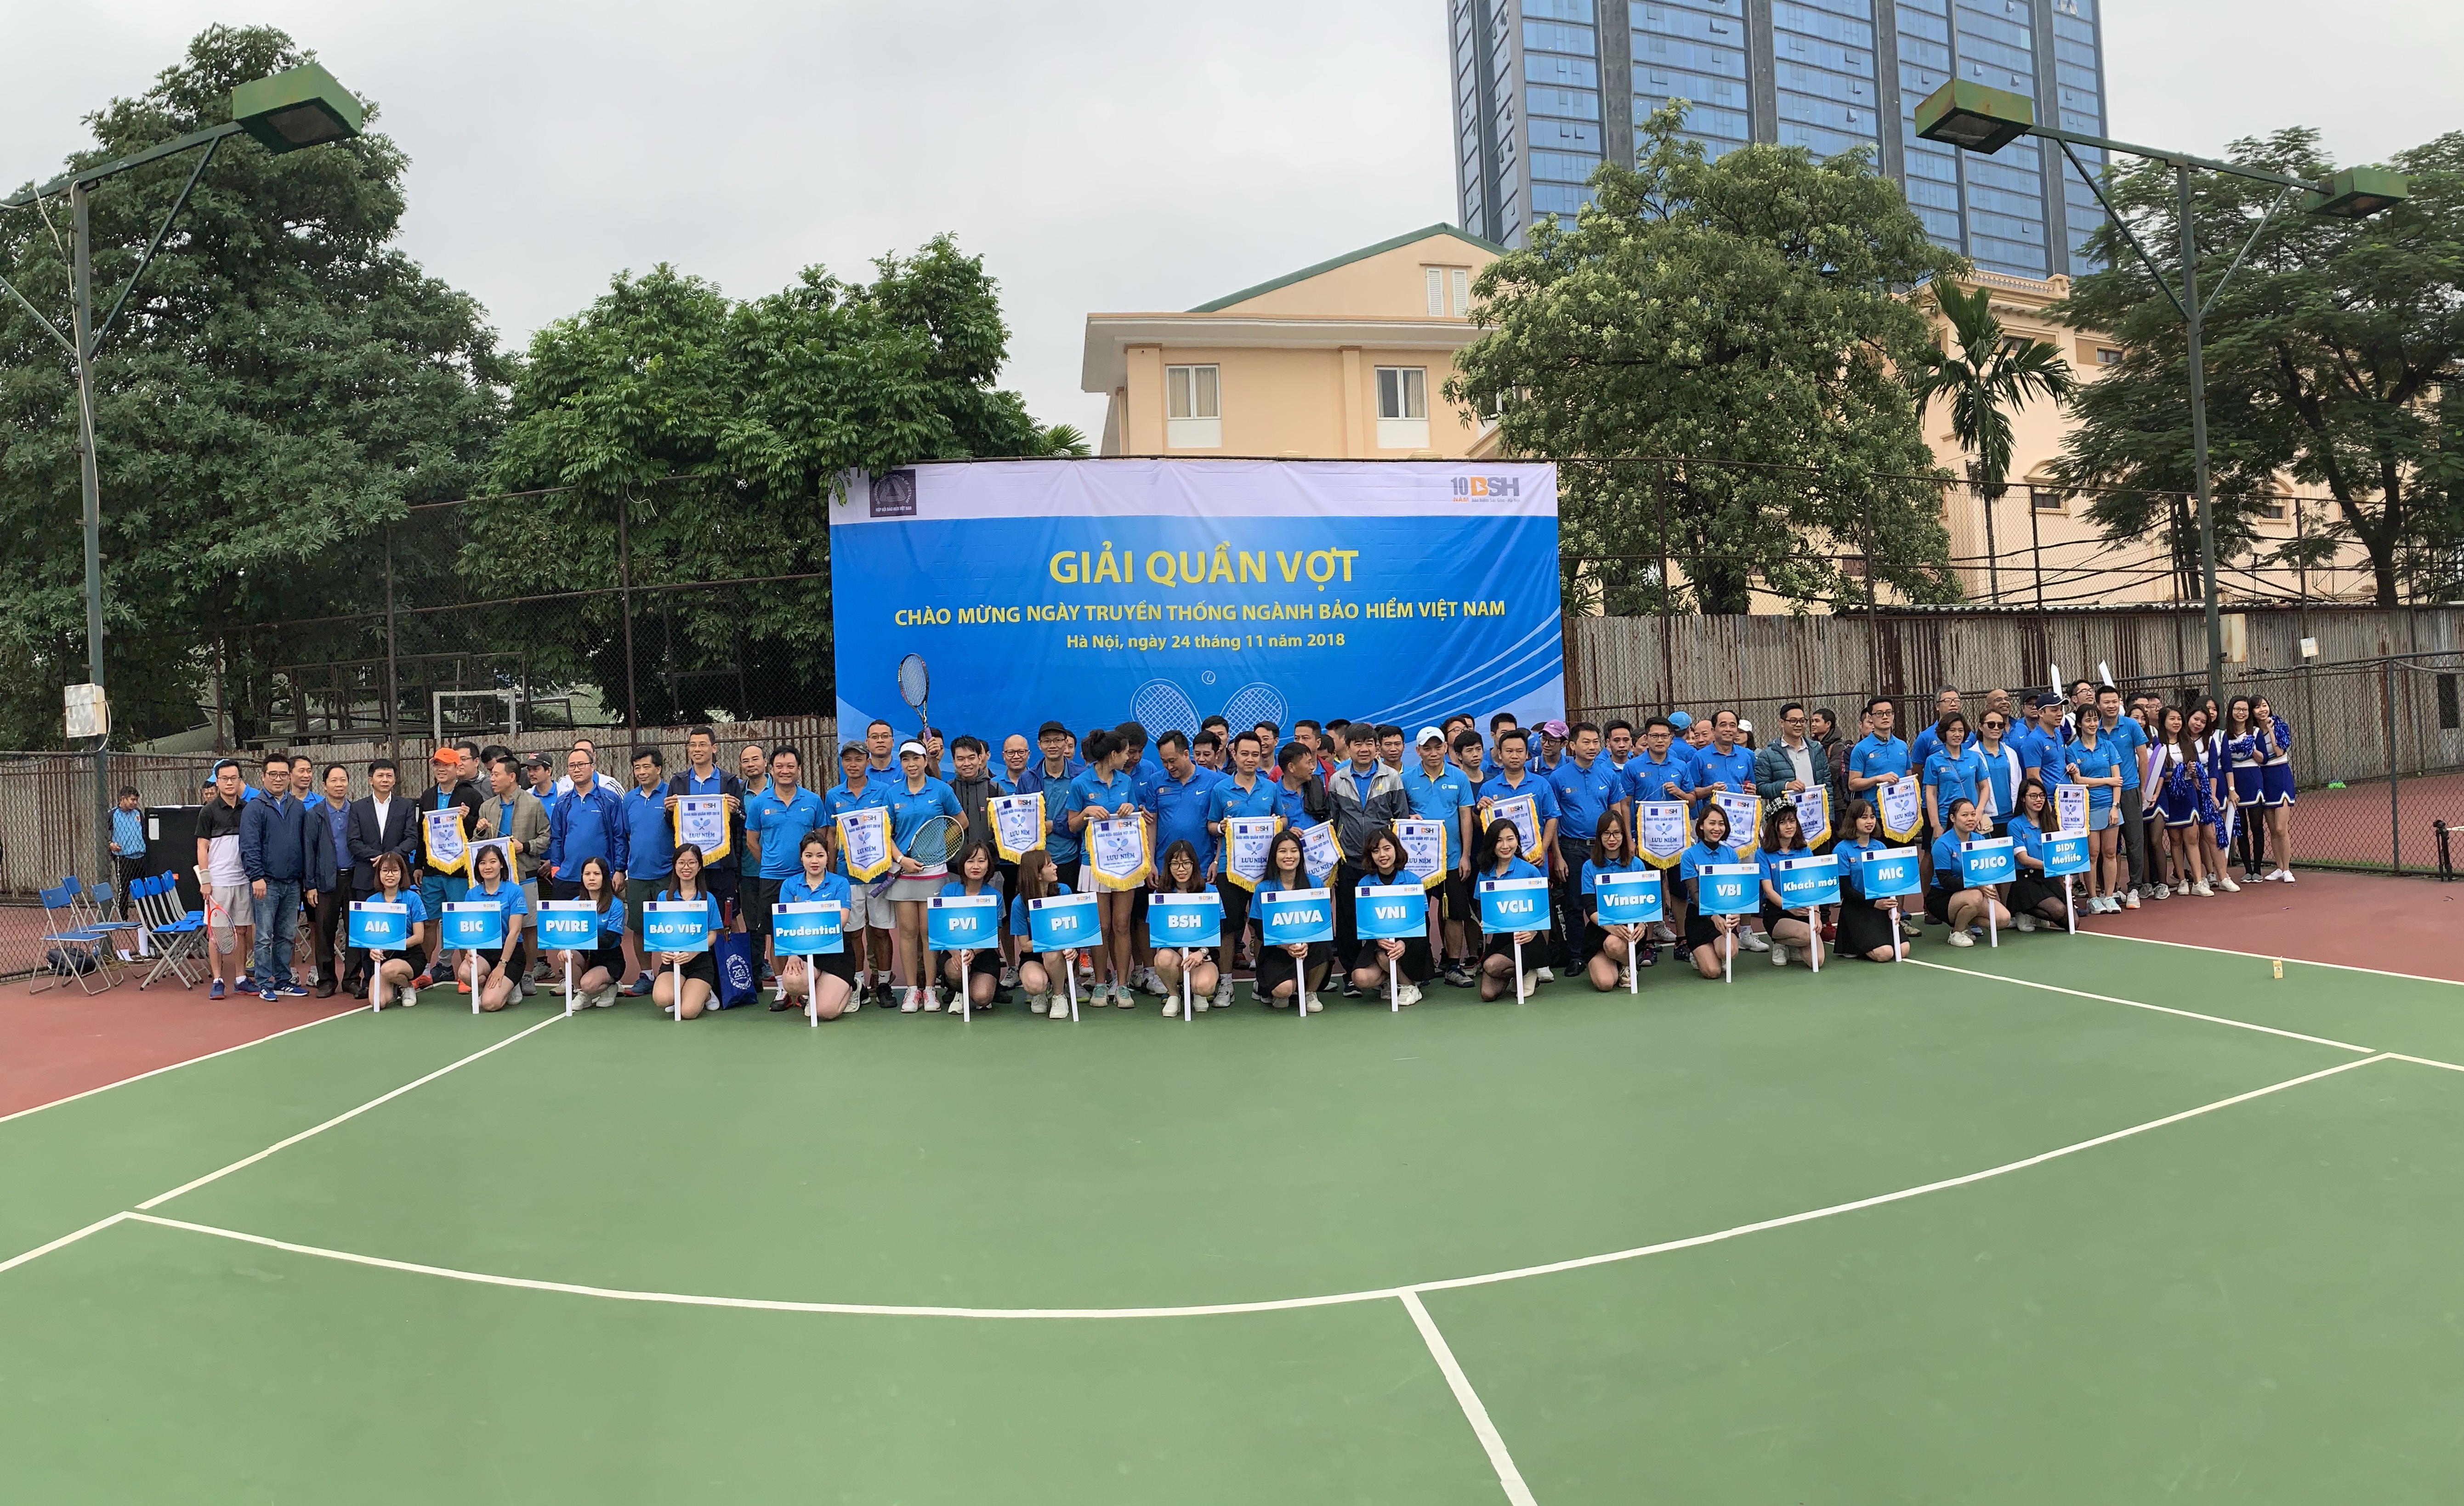 Giải quần vợt giao hữu ngành bảo hiểm Việt Nam